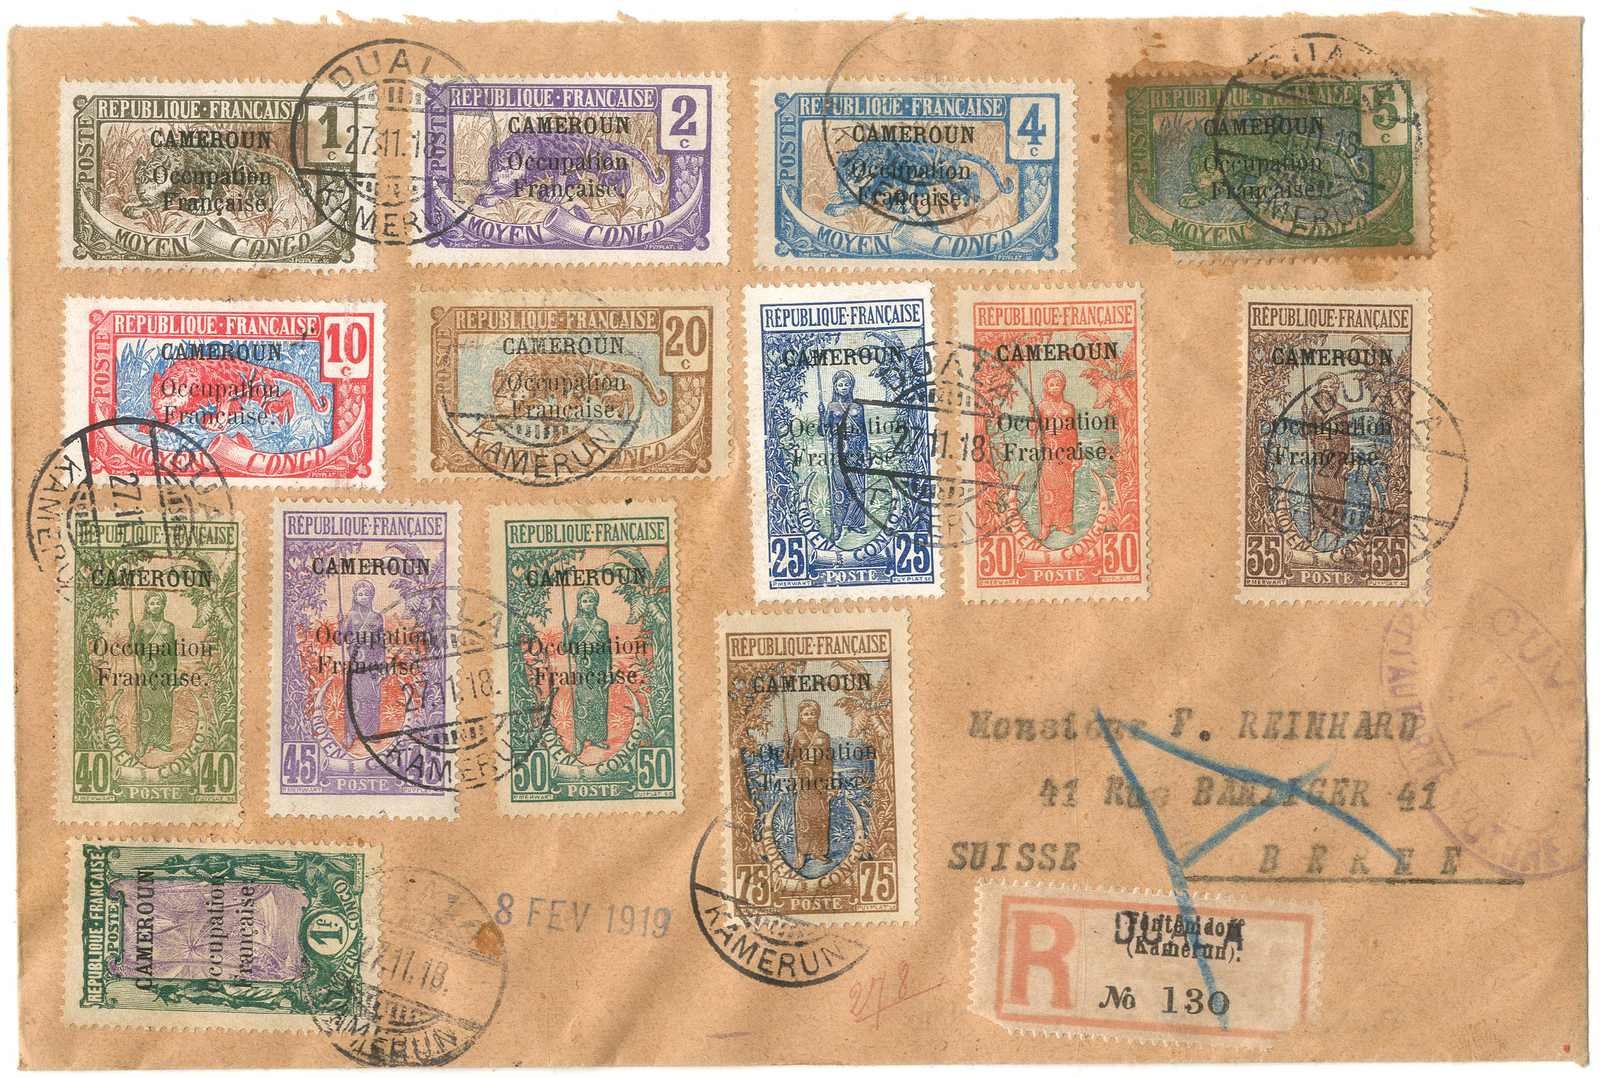 Stamp Auction - deutsche kolonien kamerun - auction #222, lot 1474